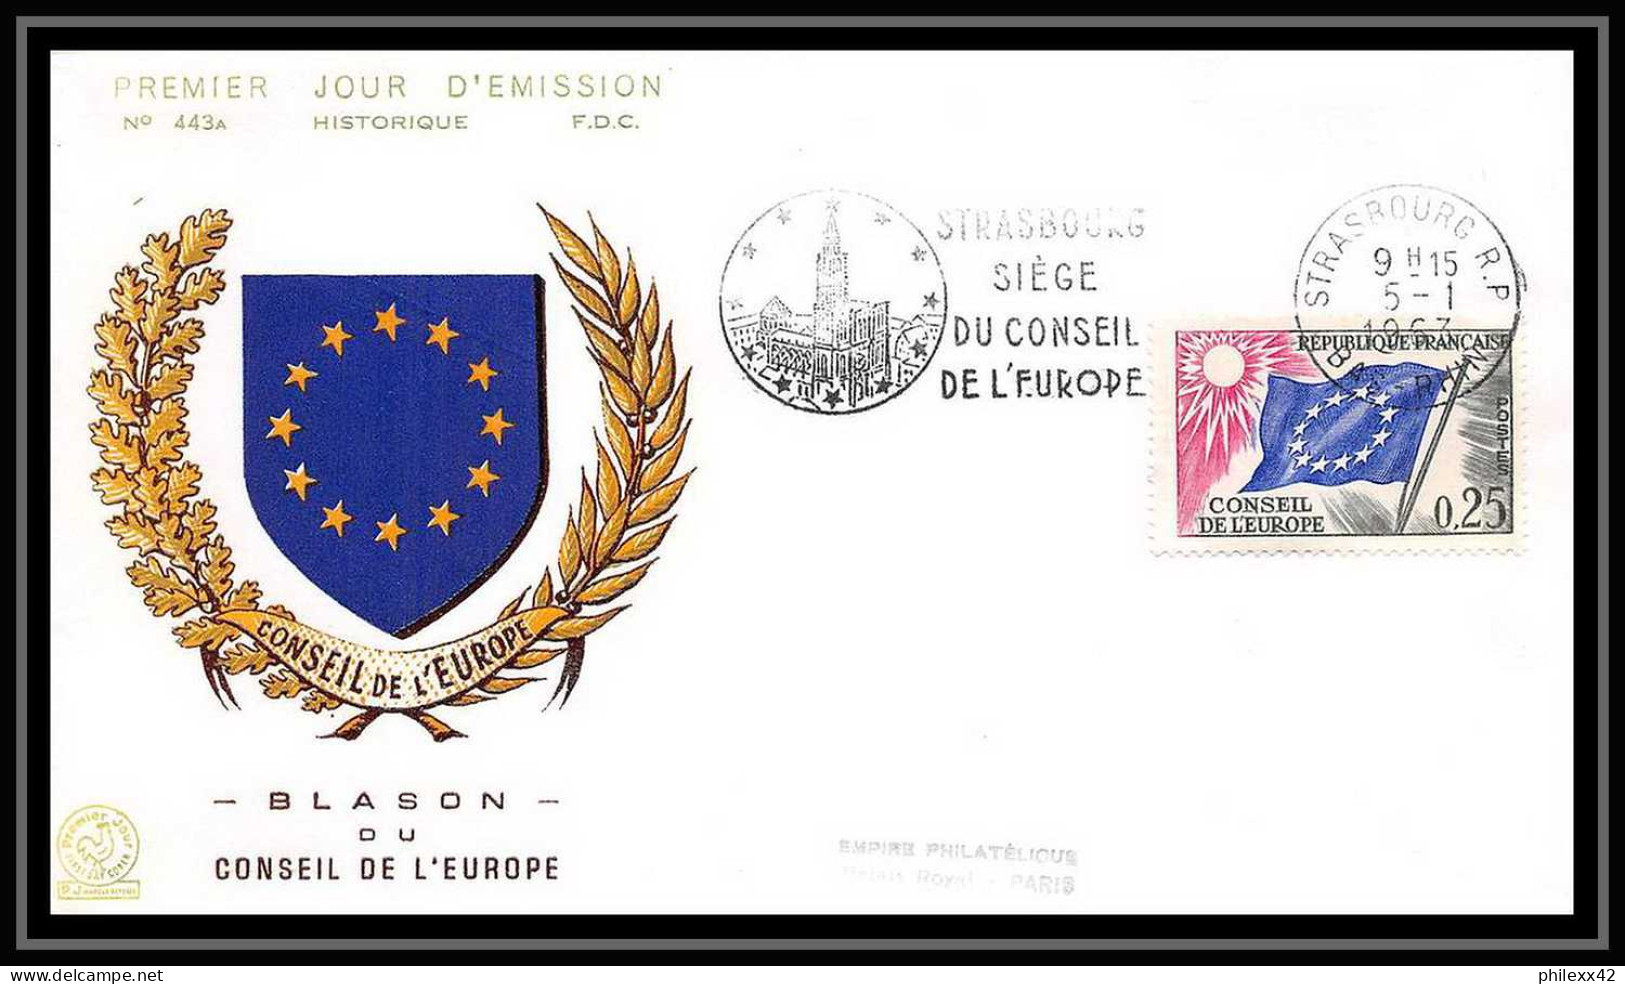 16903 France lot de 22 lettres Premier jour (fdc cover) N° 27/35 differentes service conseil de l'europe drapeau (flag)